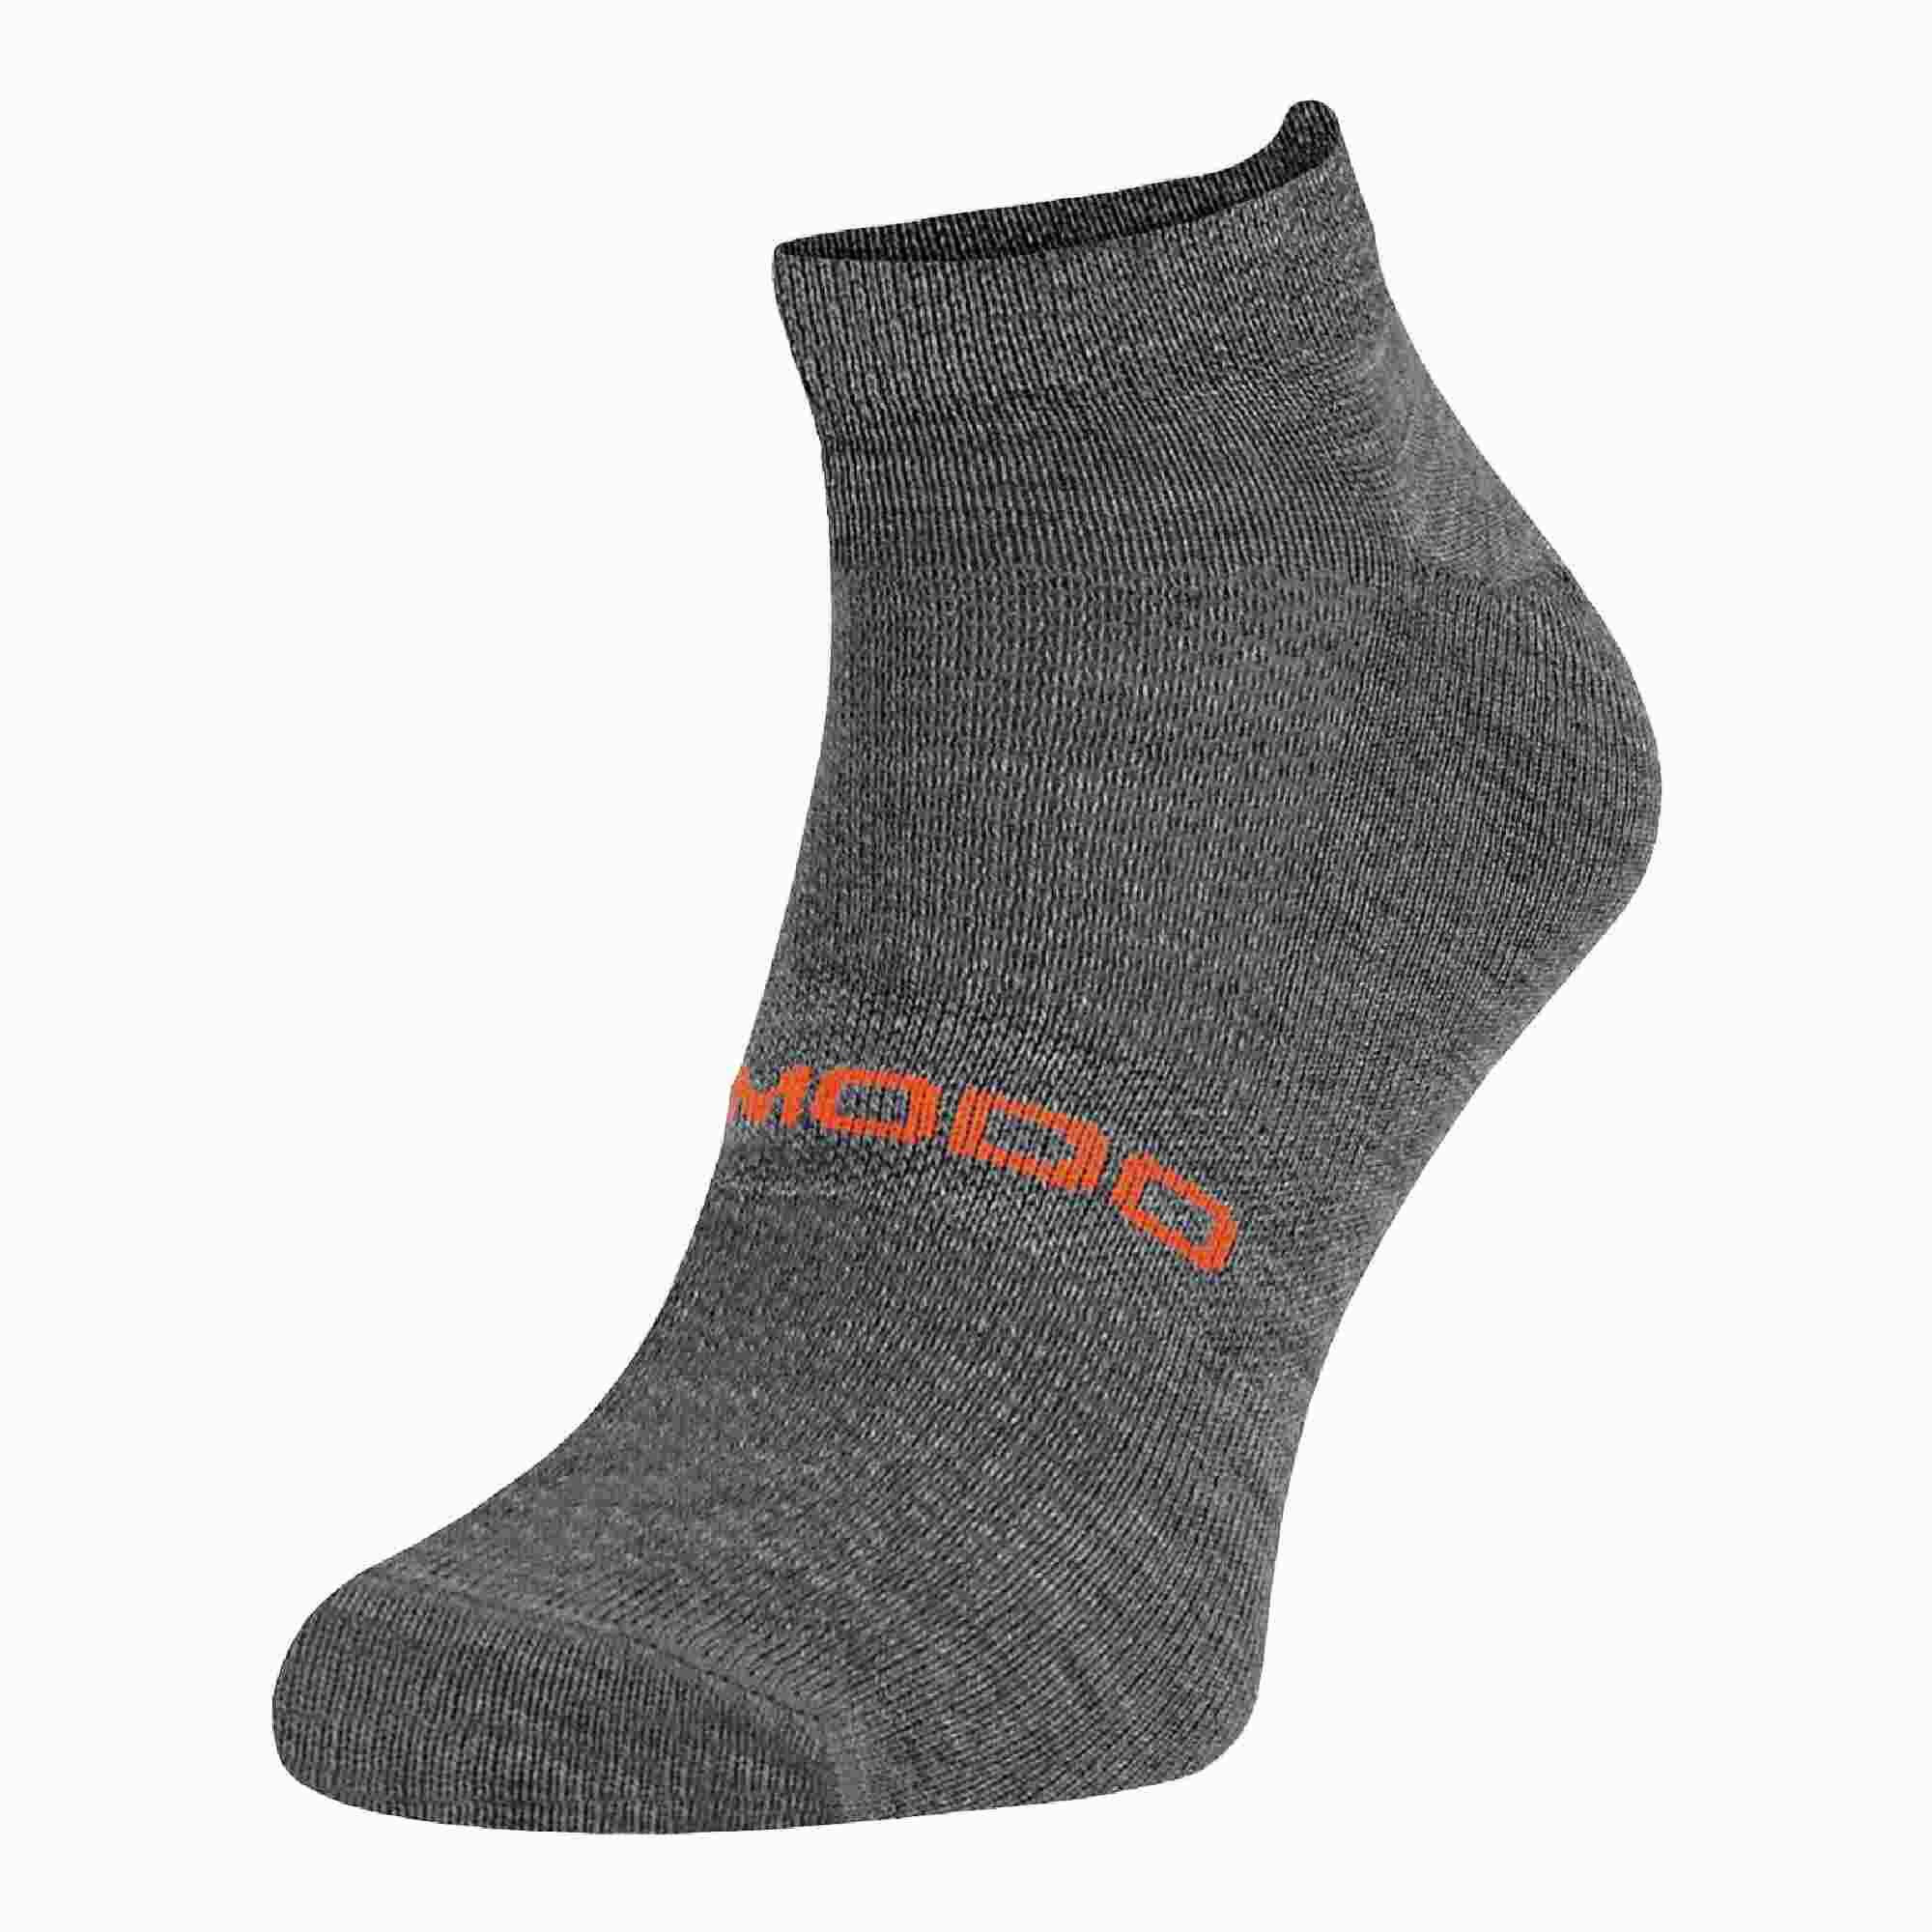 COMODO Merino Wool Ankle Trail Sport Running Socks for Mens & Women